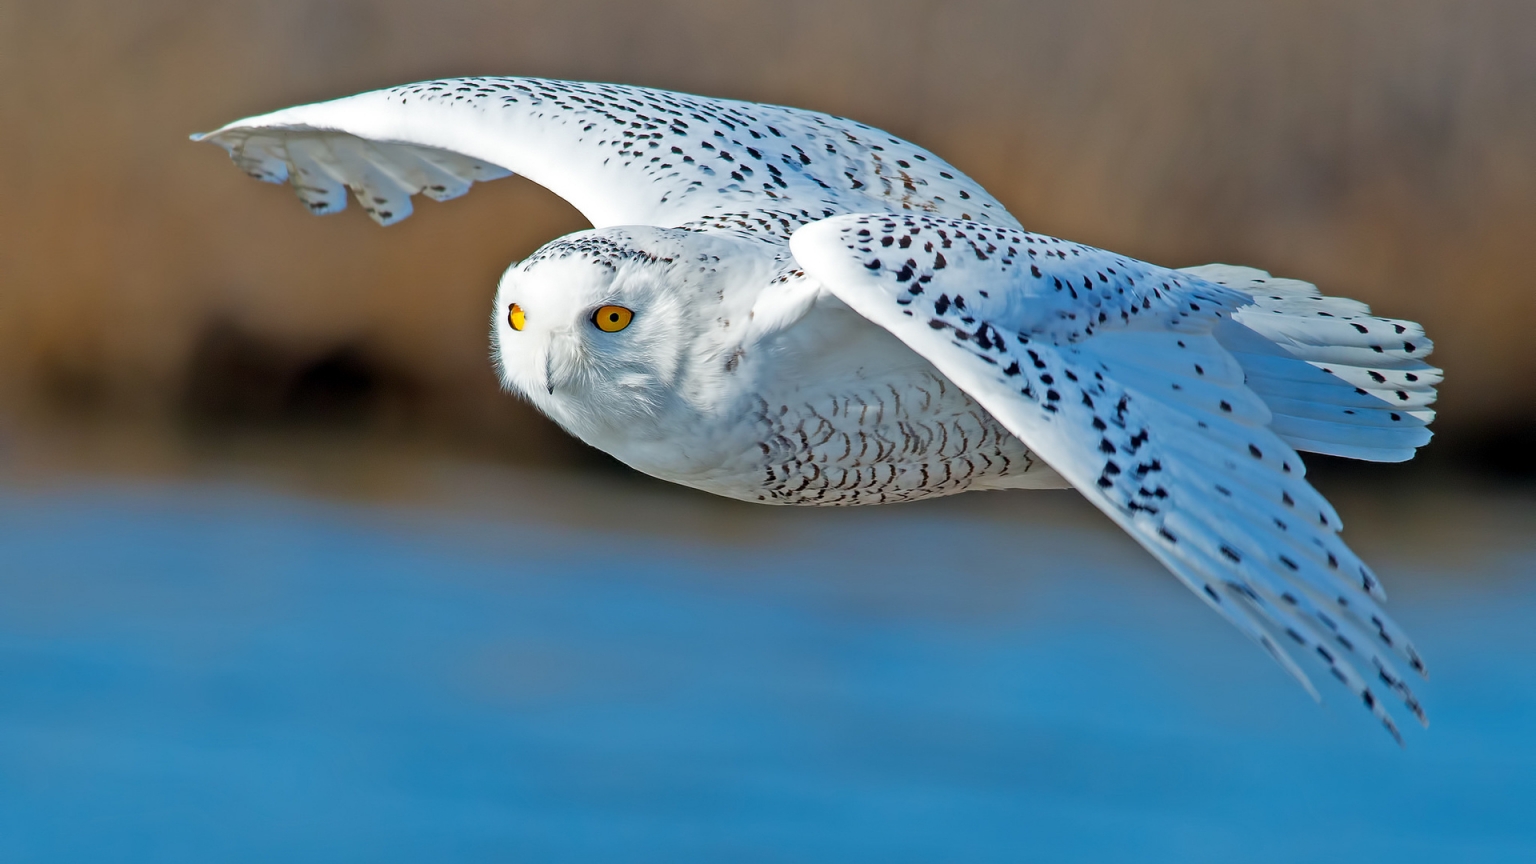 White Owl Flying for 1536 x 864 HDTV resolution